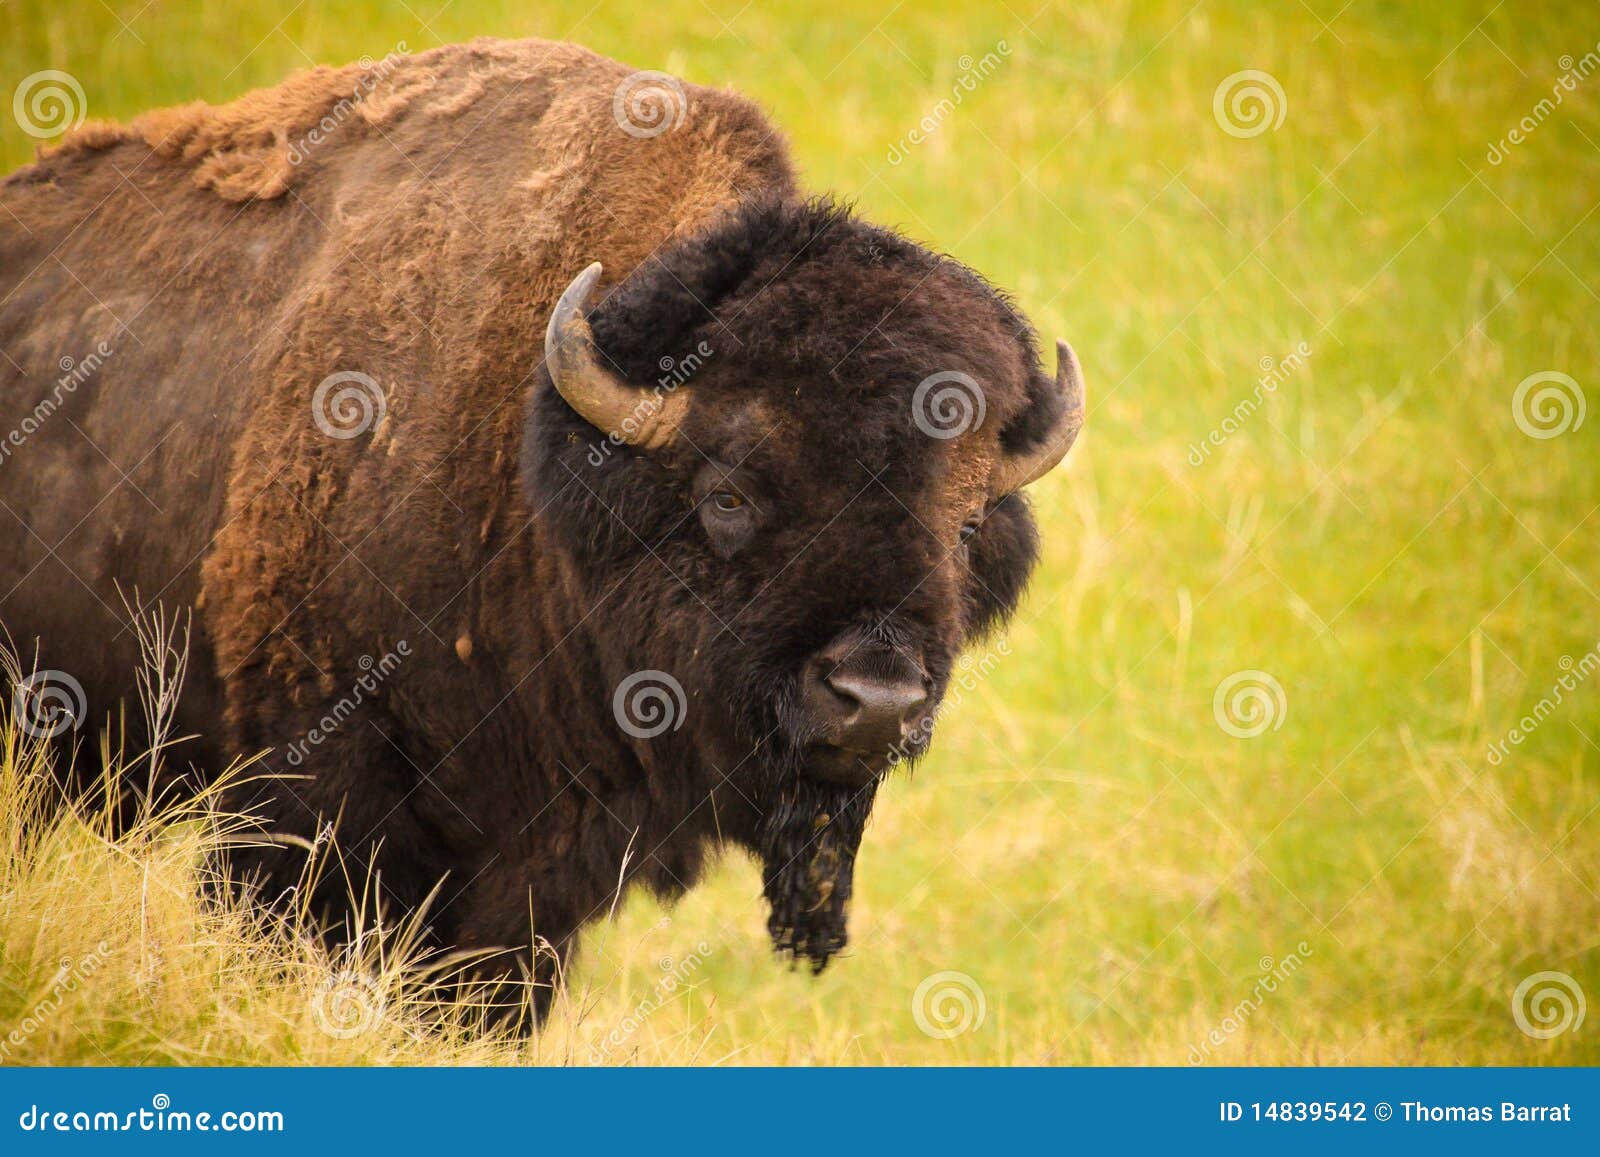 healthy bison on the grasslands